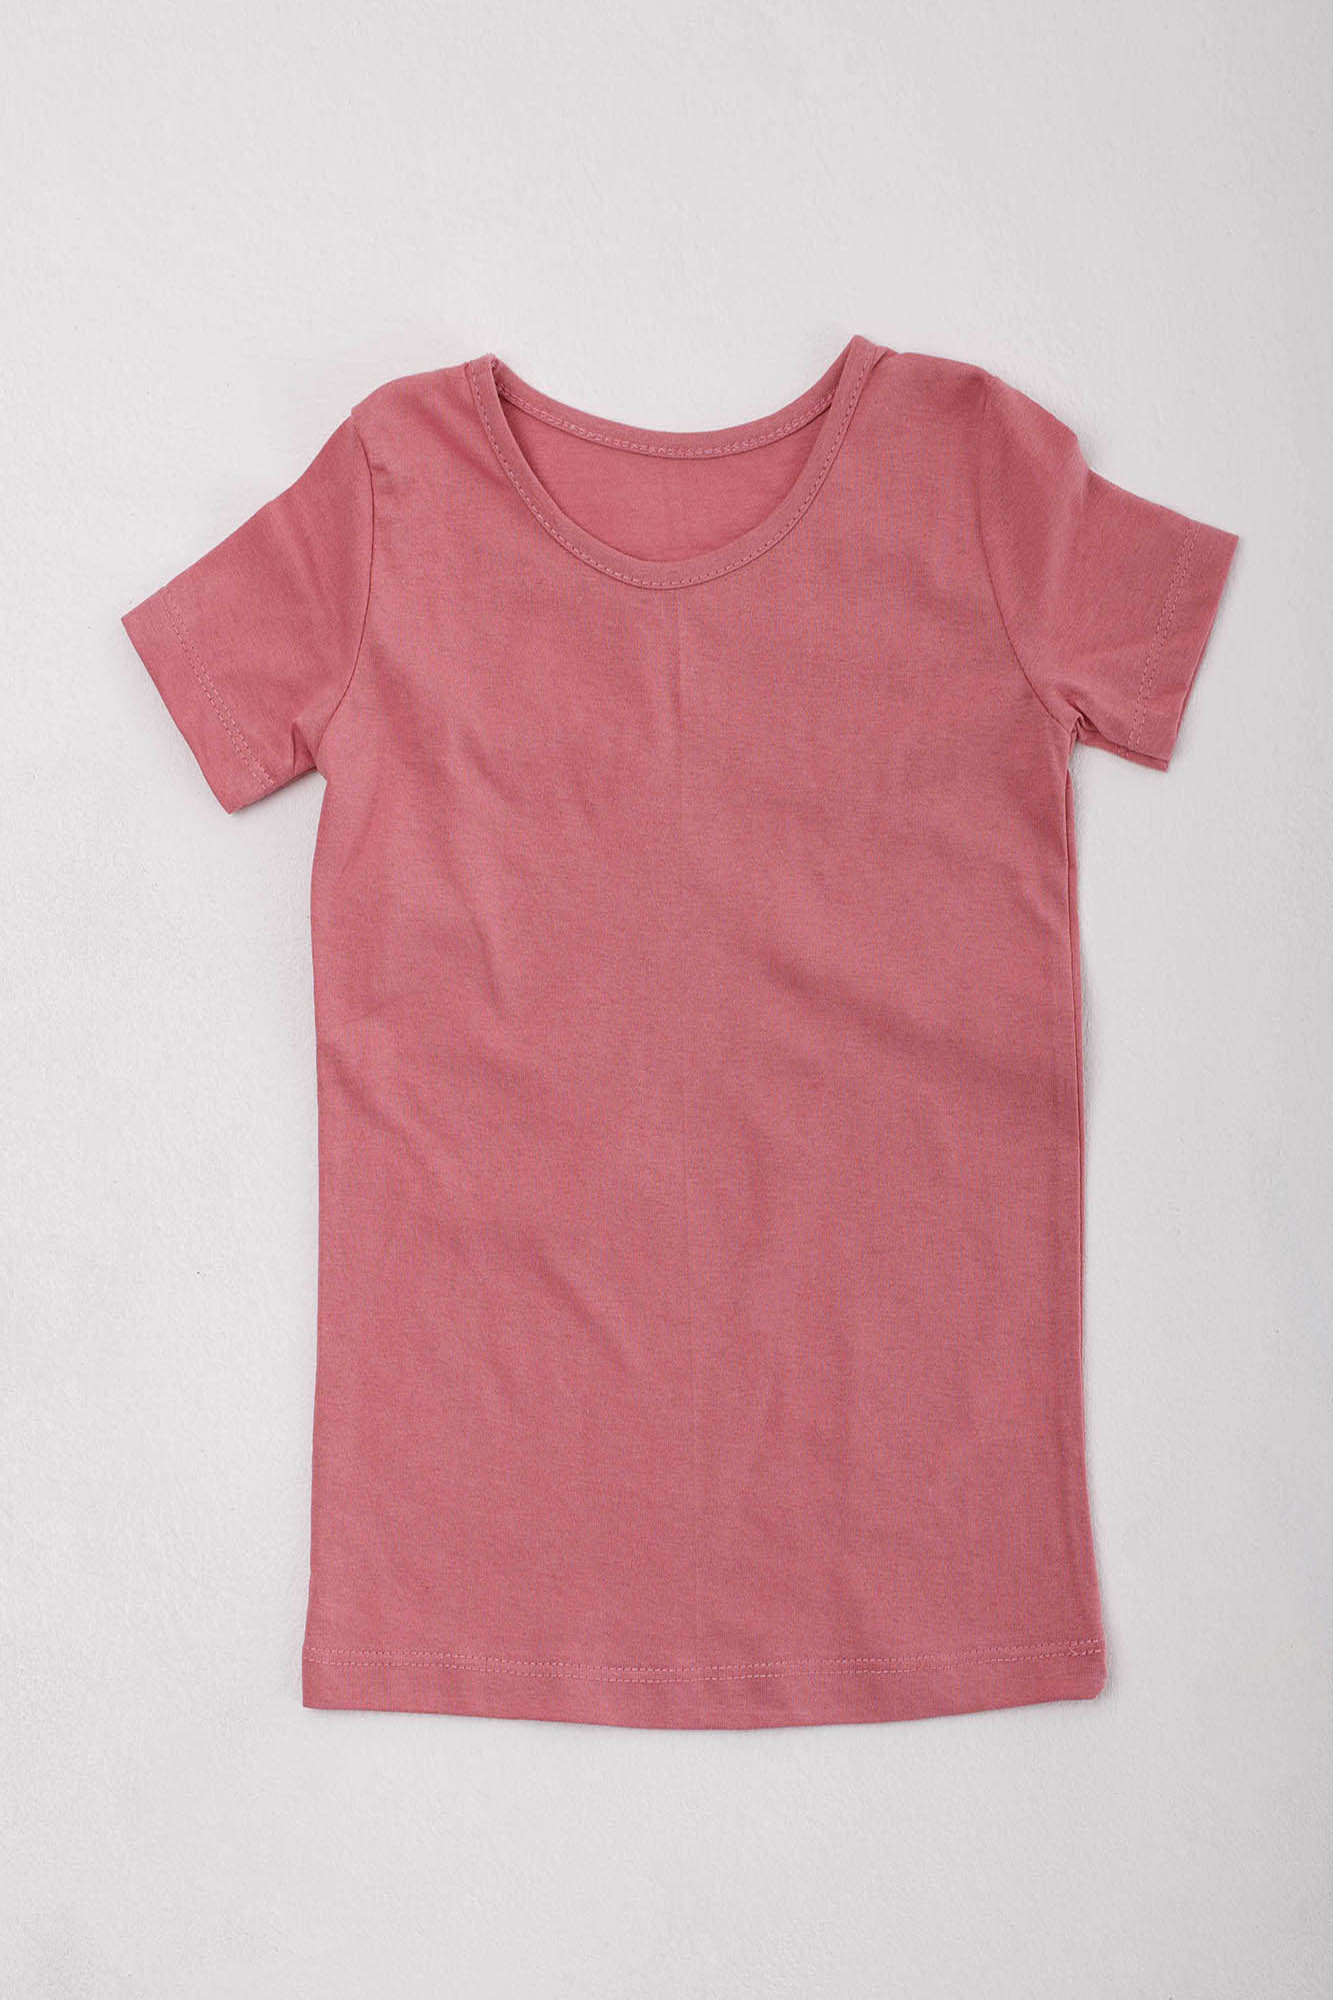 Детская футболка Aislin Цвет: Розовый (9-10 лет), размер 9-10 лет